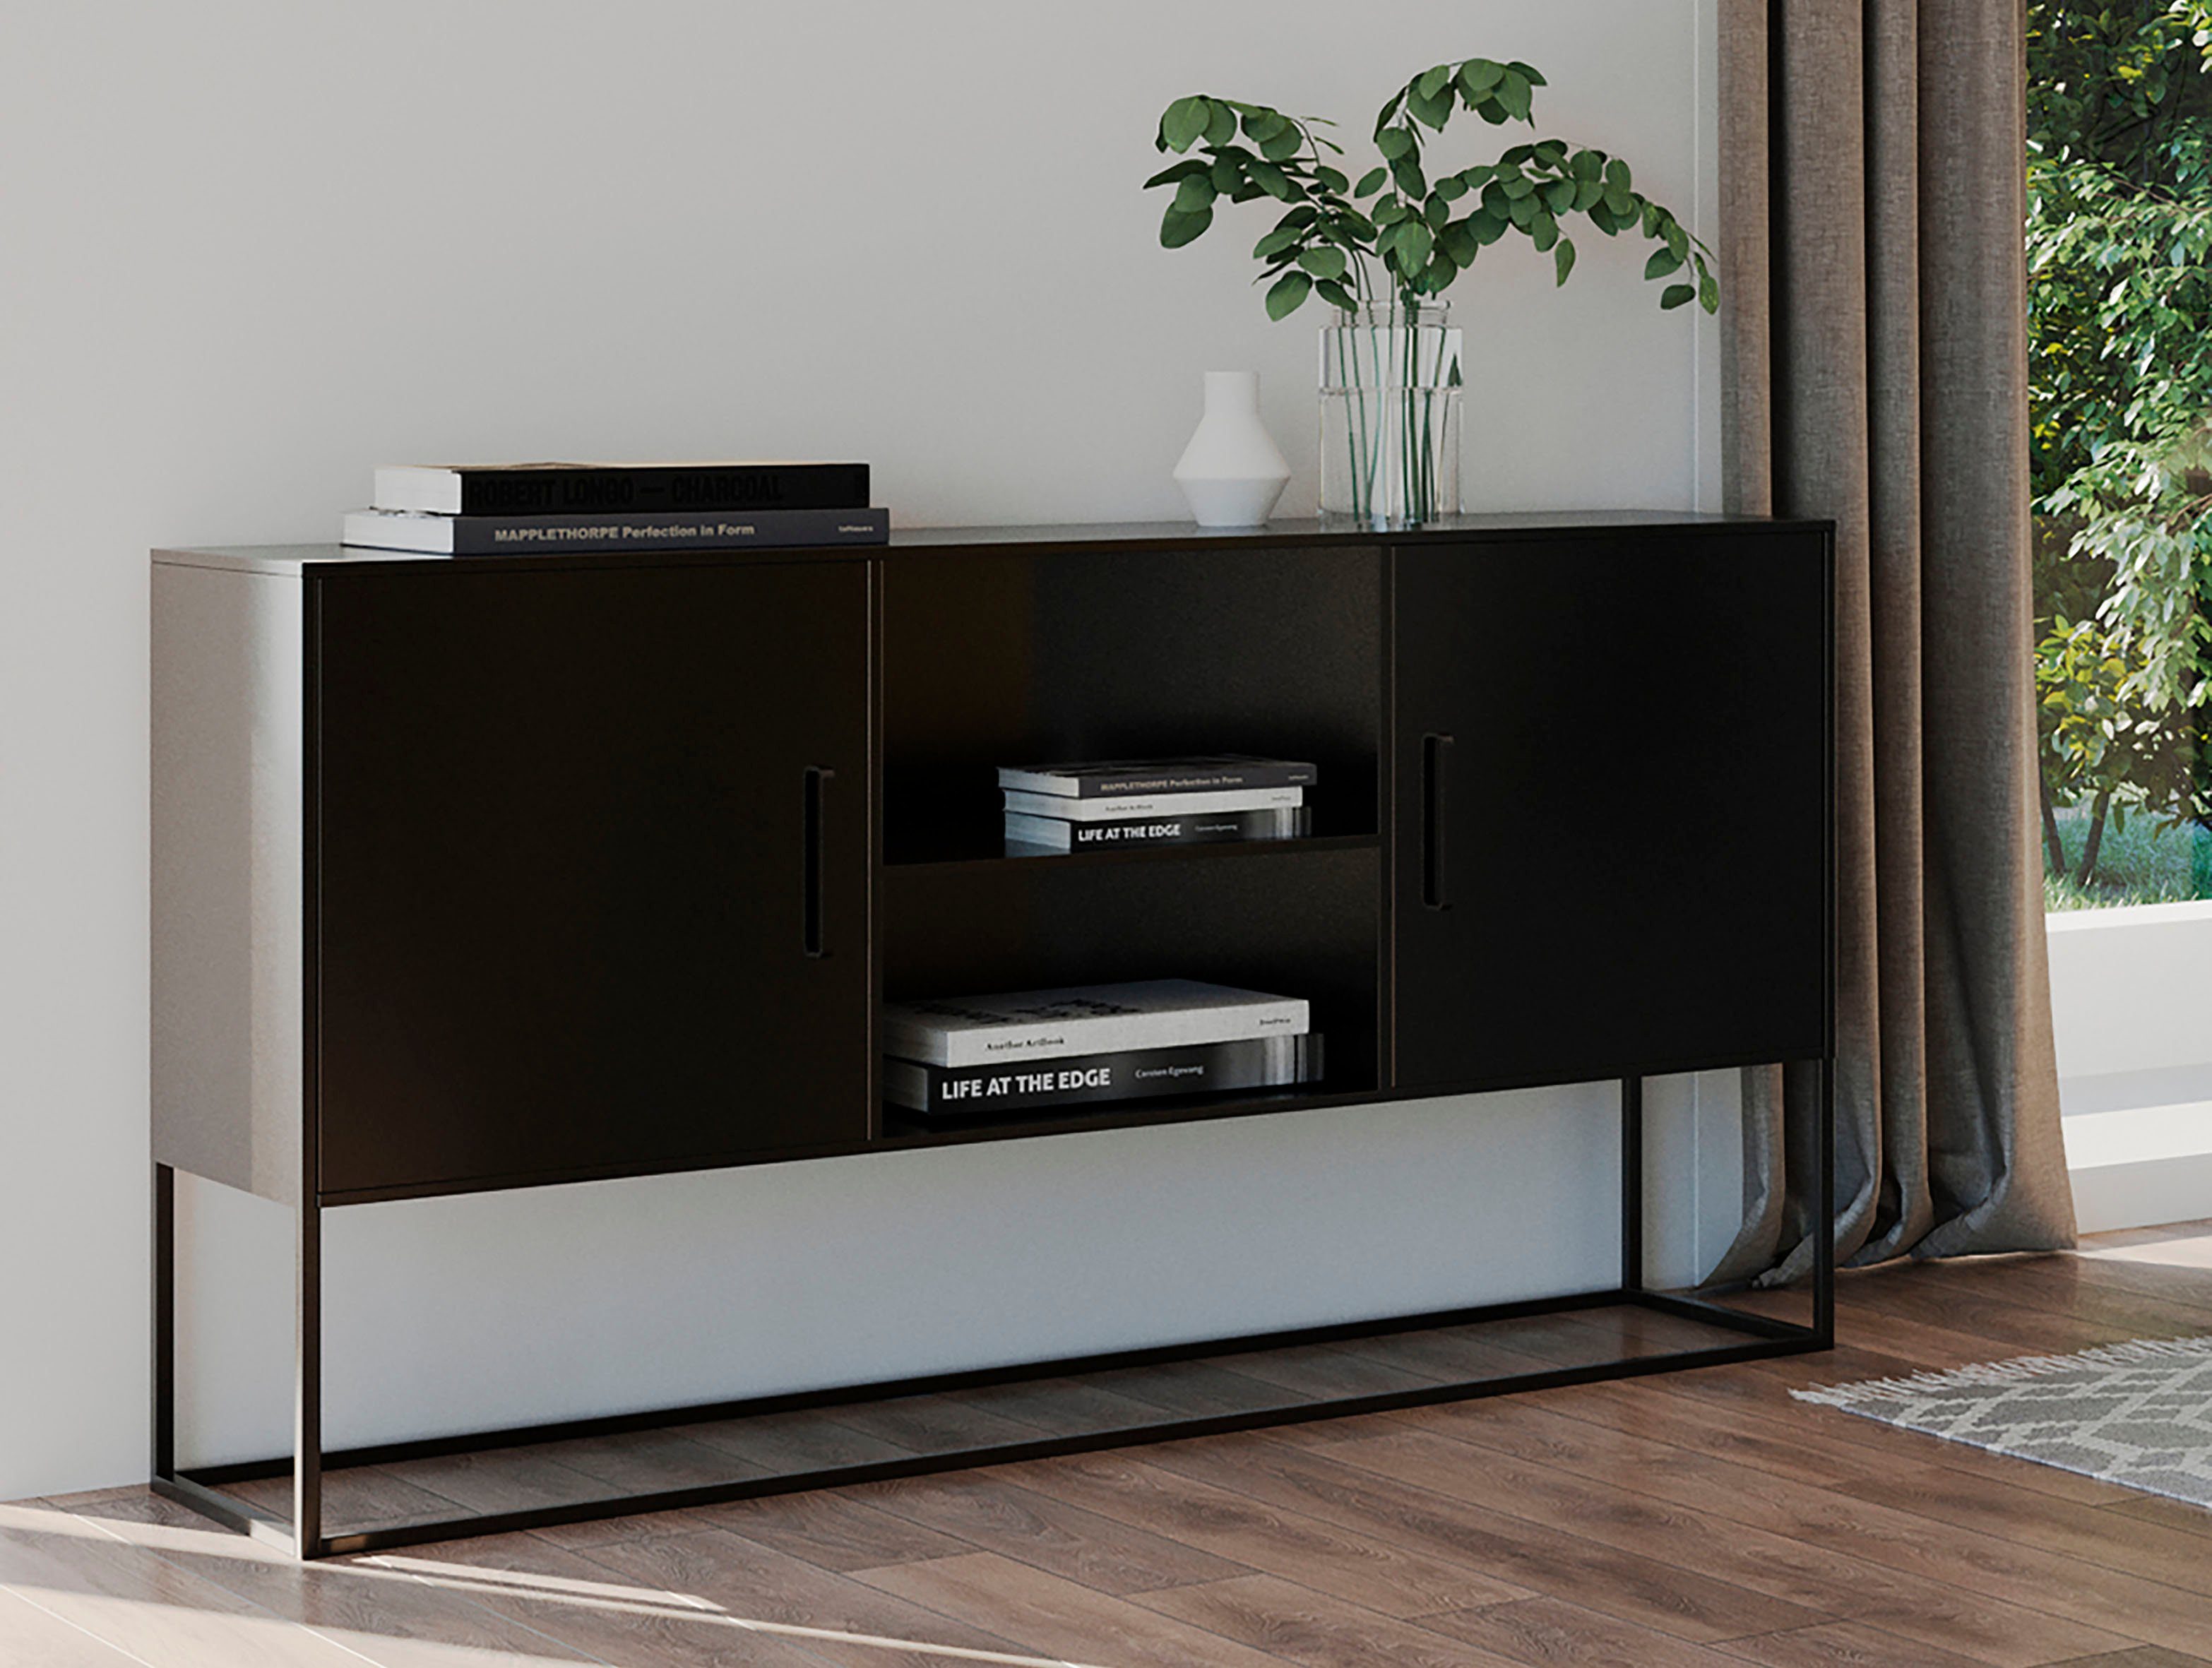 Homexperts Kast Rich designachtig metalen meubel, ideaal als kast of tv-meubel